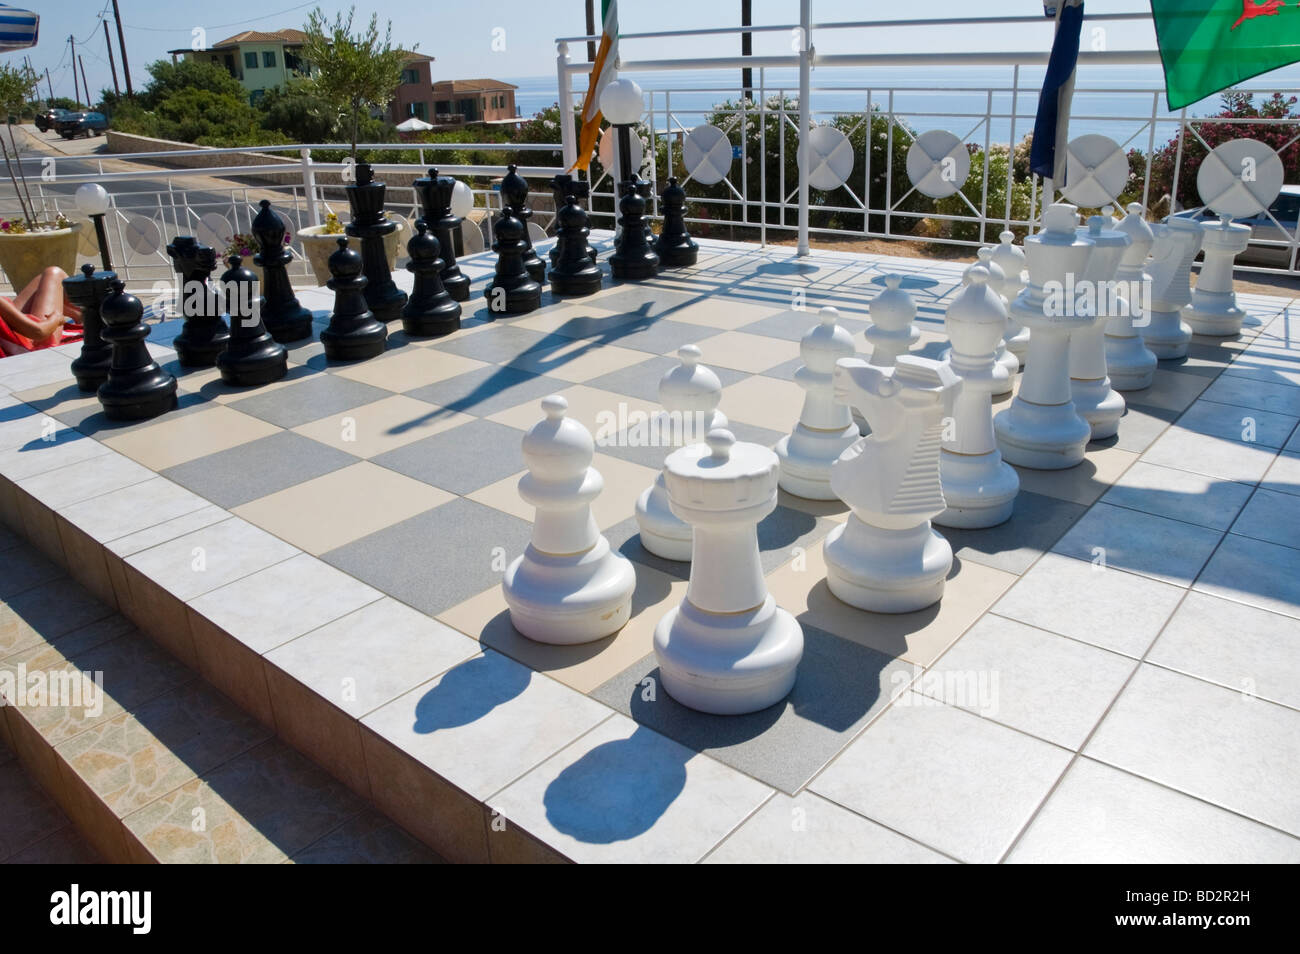 Riesigen Freiluft-Schachspiel festgesetzt am Pool des Hotels in der Nähe von Skala auf der griechischen Mittelmeer Insel von Kefalonia Griechenland GR Stockfoto